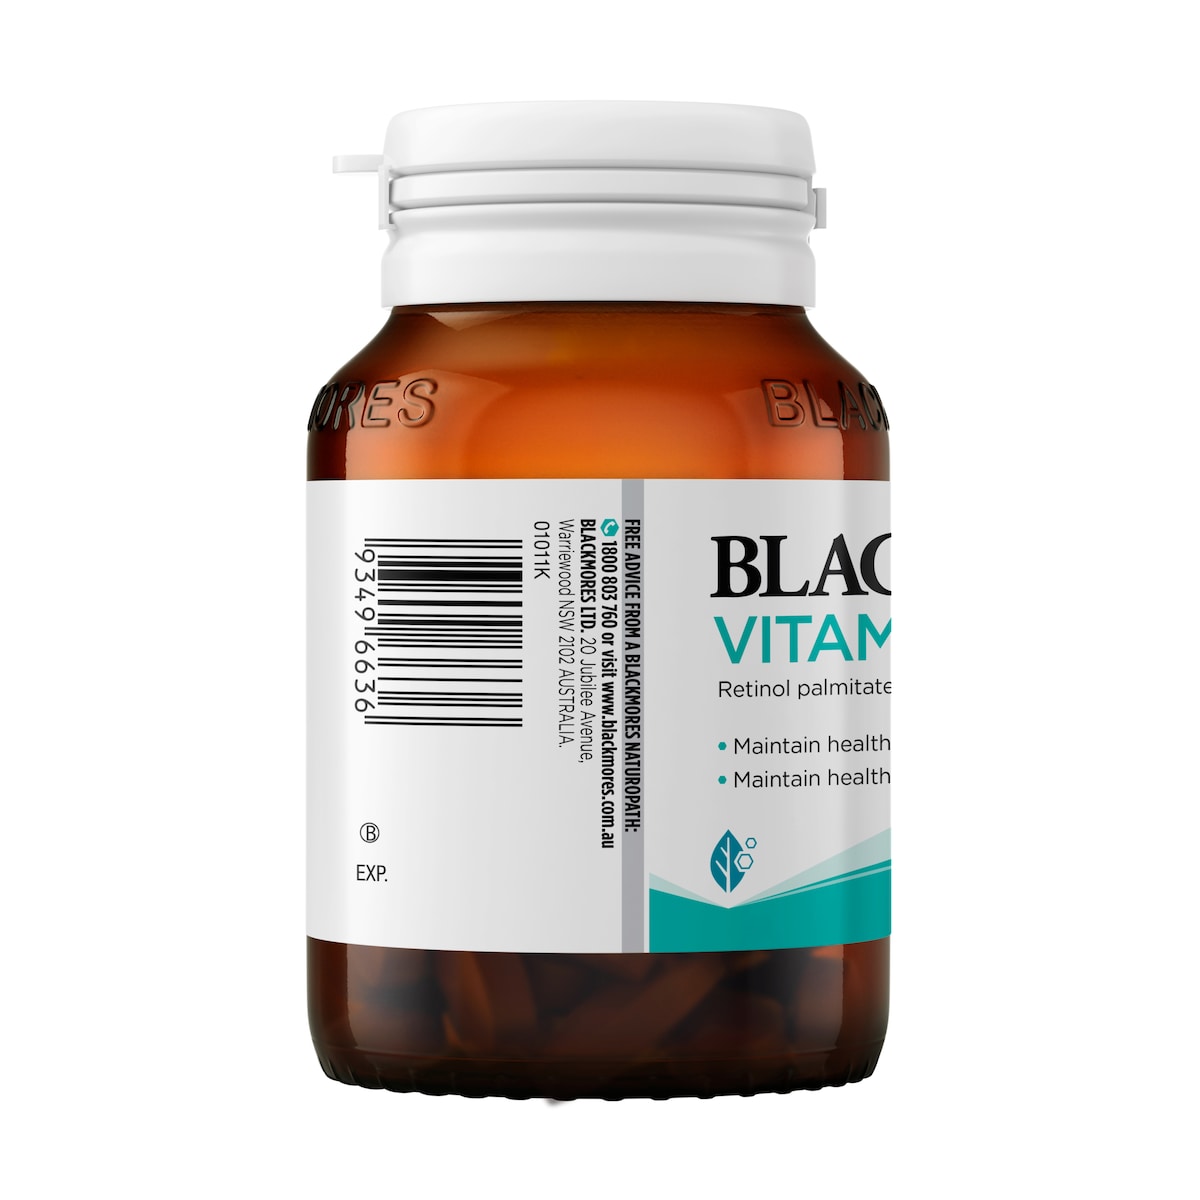 Blackmores Vitamin A 5000Iu 150 Capsules